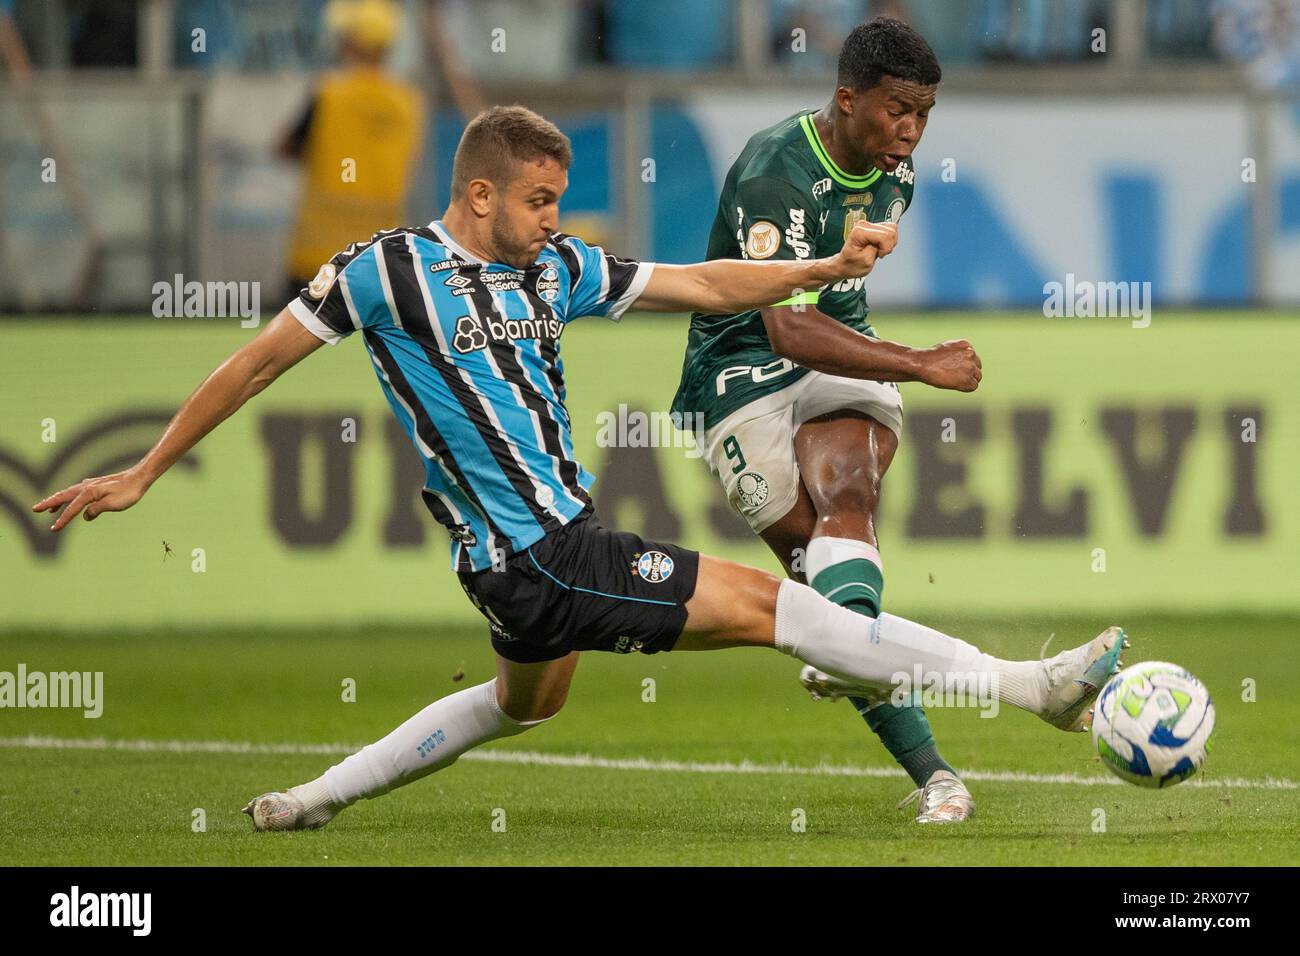 Piquerez of Palmeiras drives the ball the ball during a match